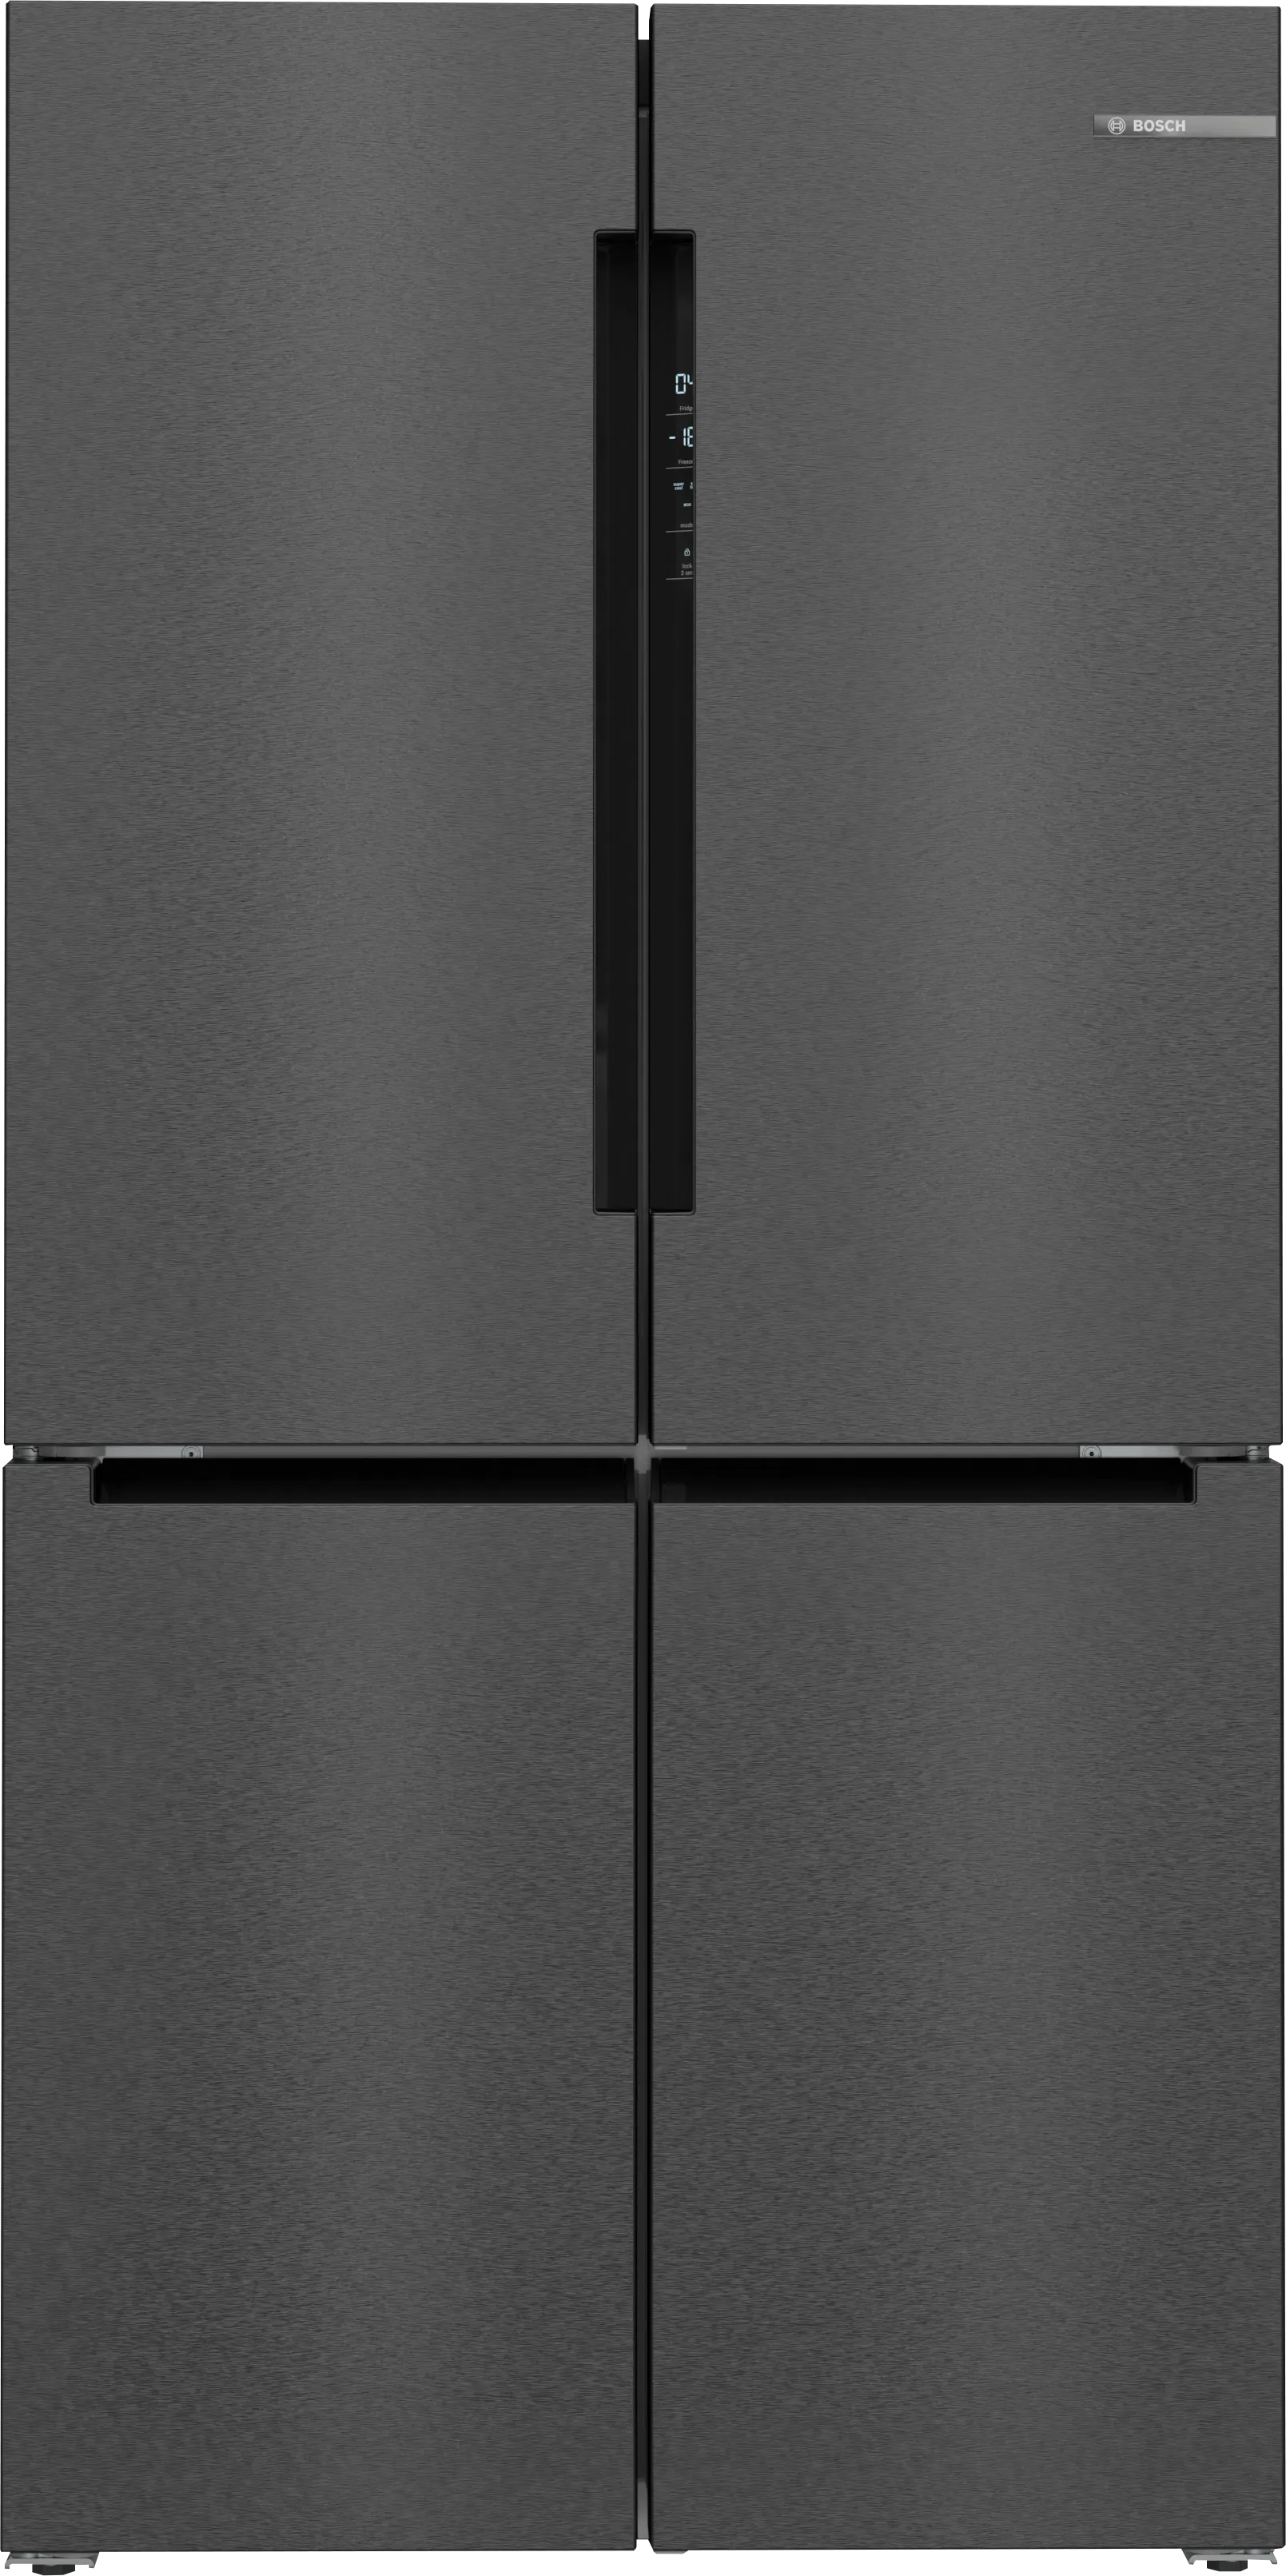 Series 4 French Door Bottom freezer, multi door 183 x 90.5 cm Black stainless steel 